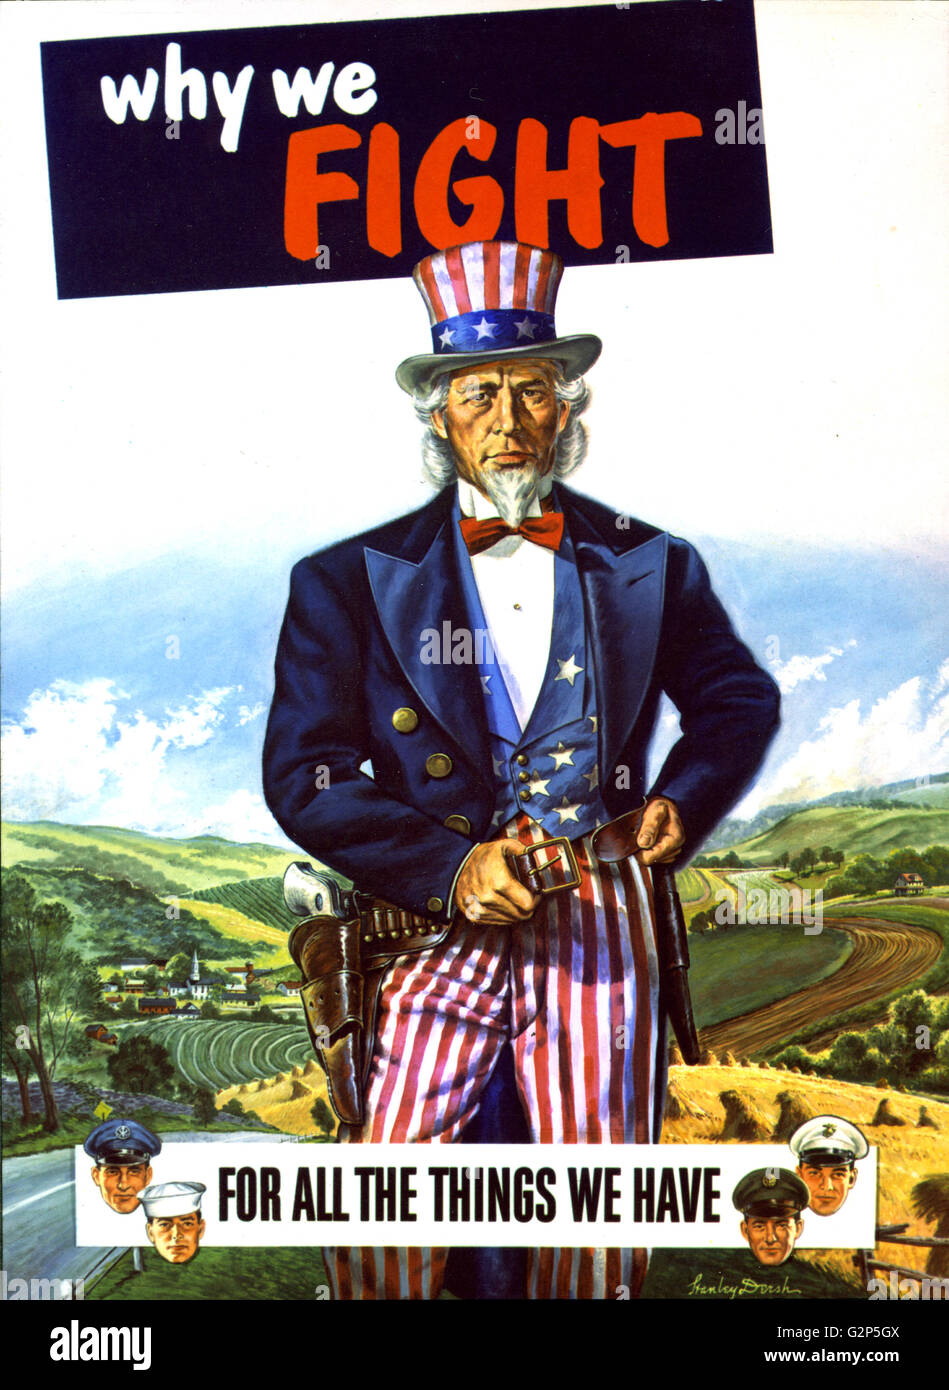 Guerra Post-World II poster che mostra di pittura lo zio Sam, assistita da uomini di tutte le branche del militare degli Stati Uniti, pronti a difendere il modo americano di vita. Stanley Dersh, artista. Foto Stock